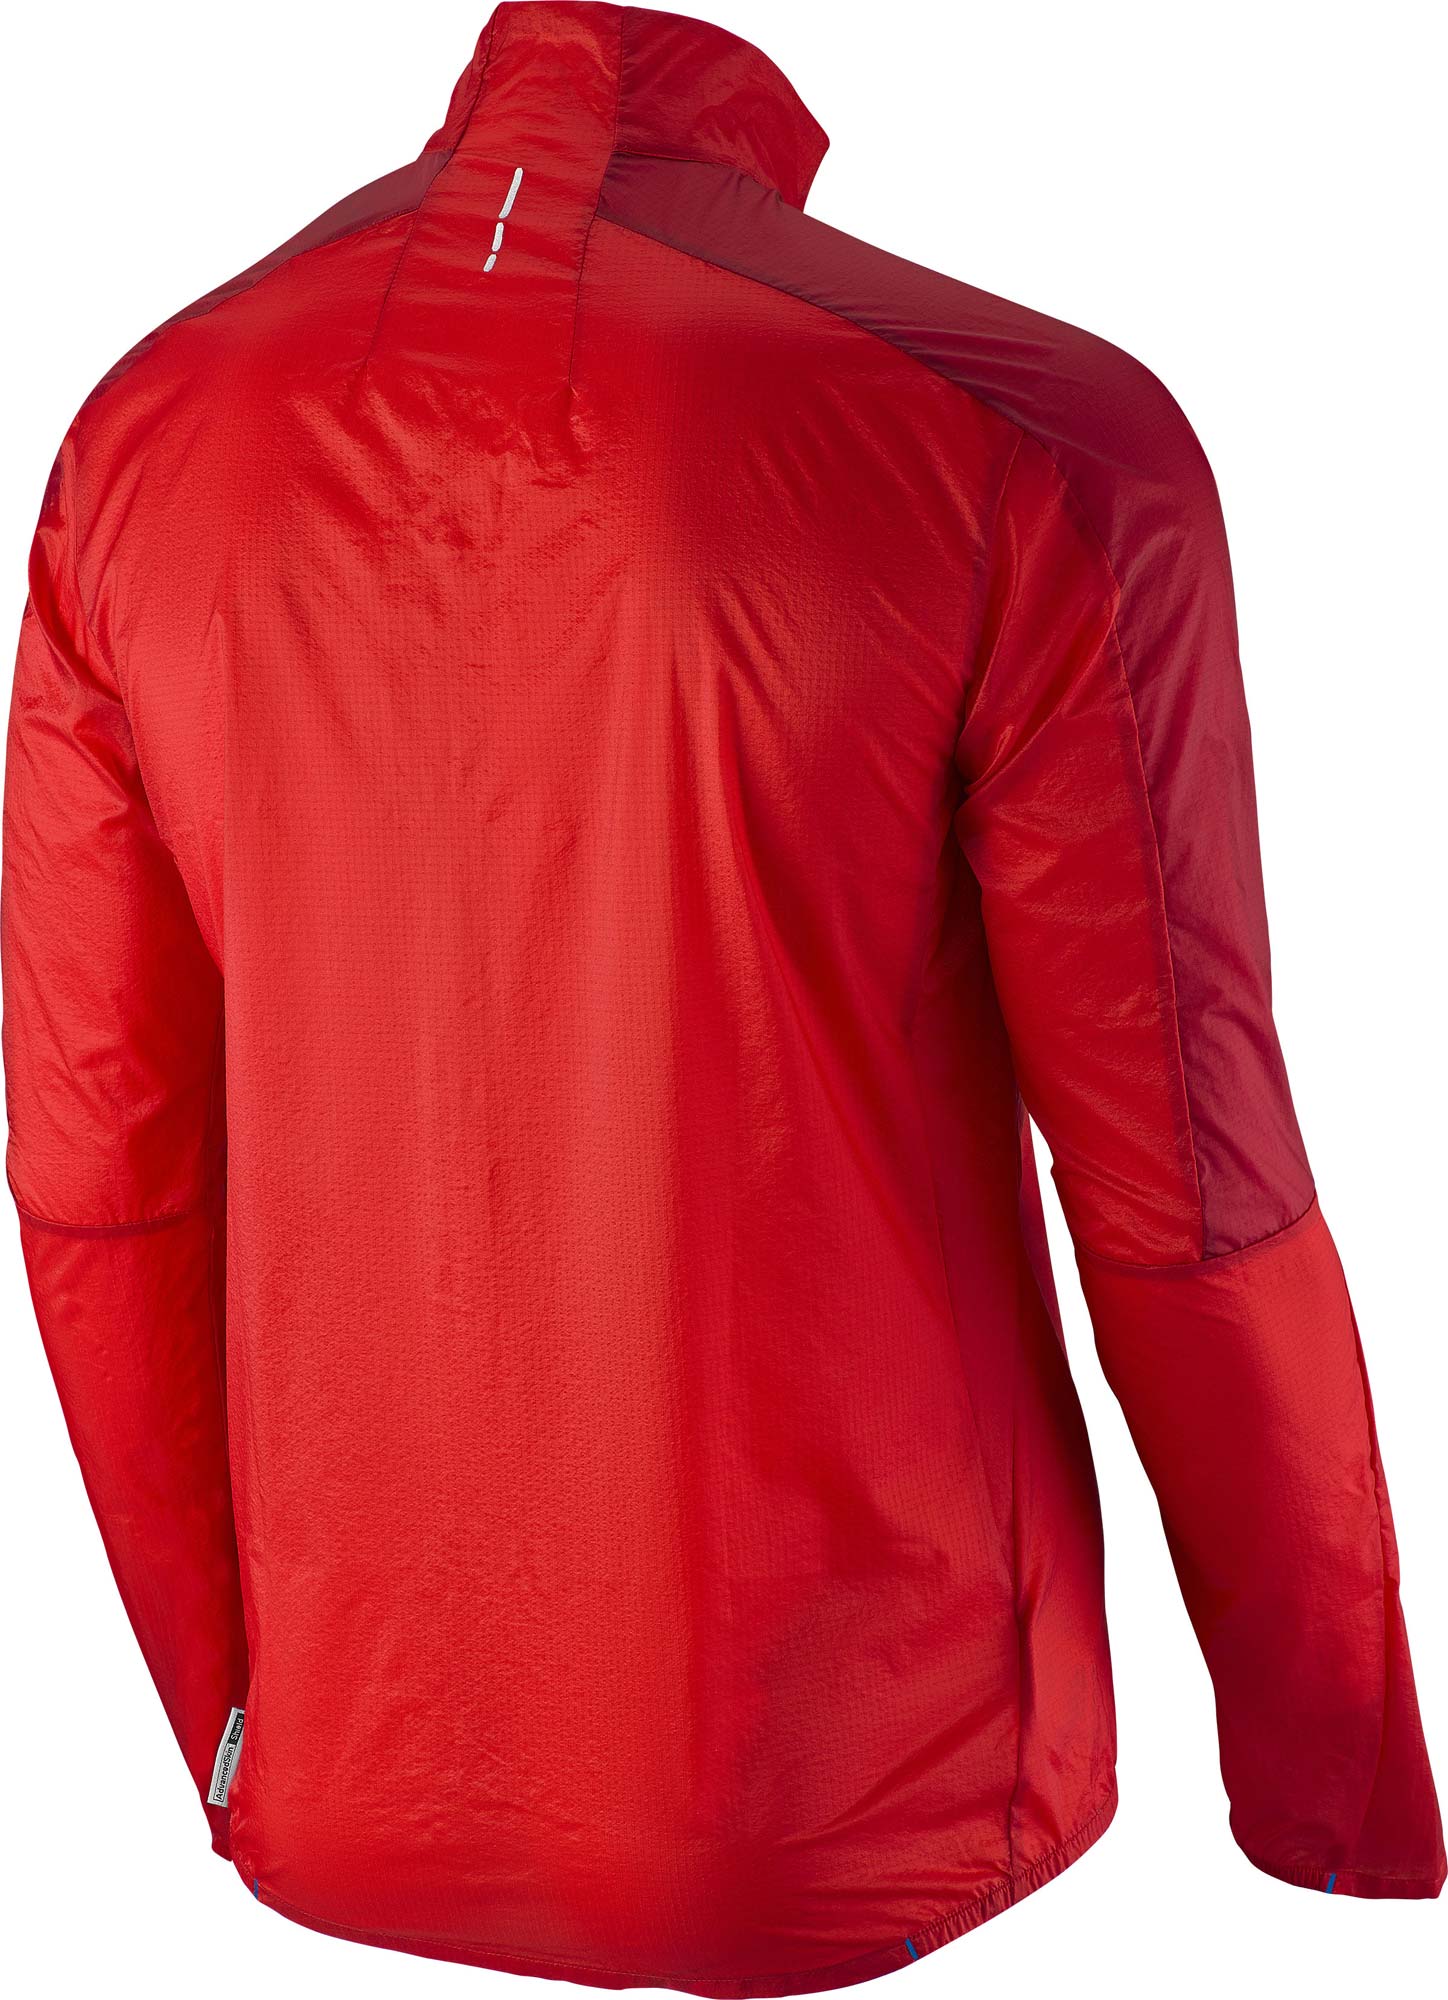 L37221000 FAST WING JACKET M MATADOR-X/VICTORY RED - Men's jacket